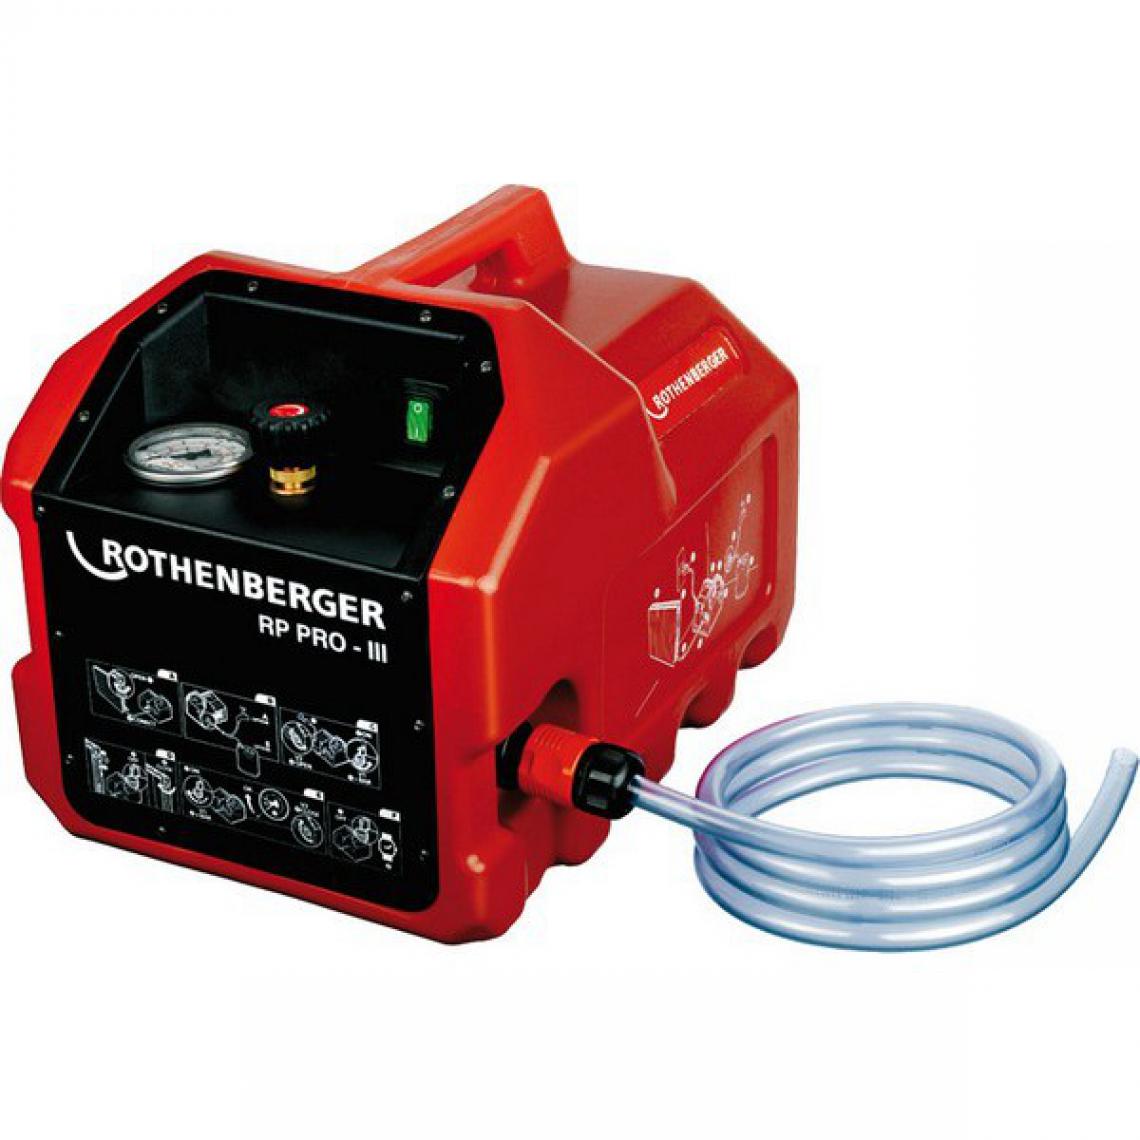 Rothenberger - Pompe de contrôle électrique RP PRO lll, Volume d'aspiration : 6 l/min, Puissance 1,3 kW, Raccord R 1/2 pouces - Détecteur connecté